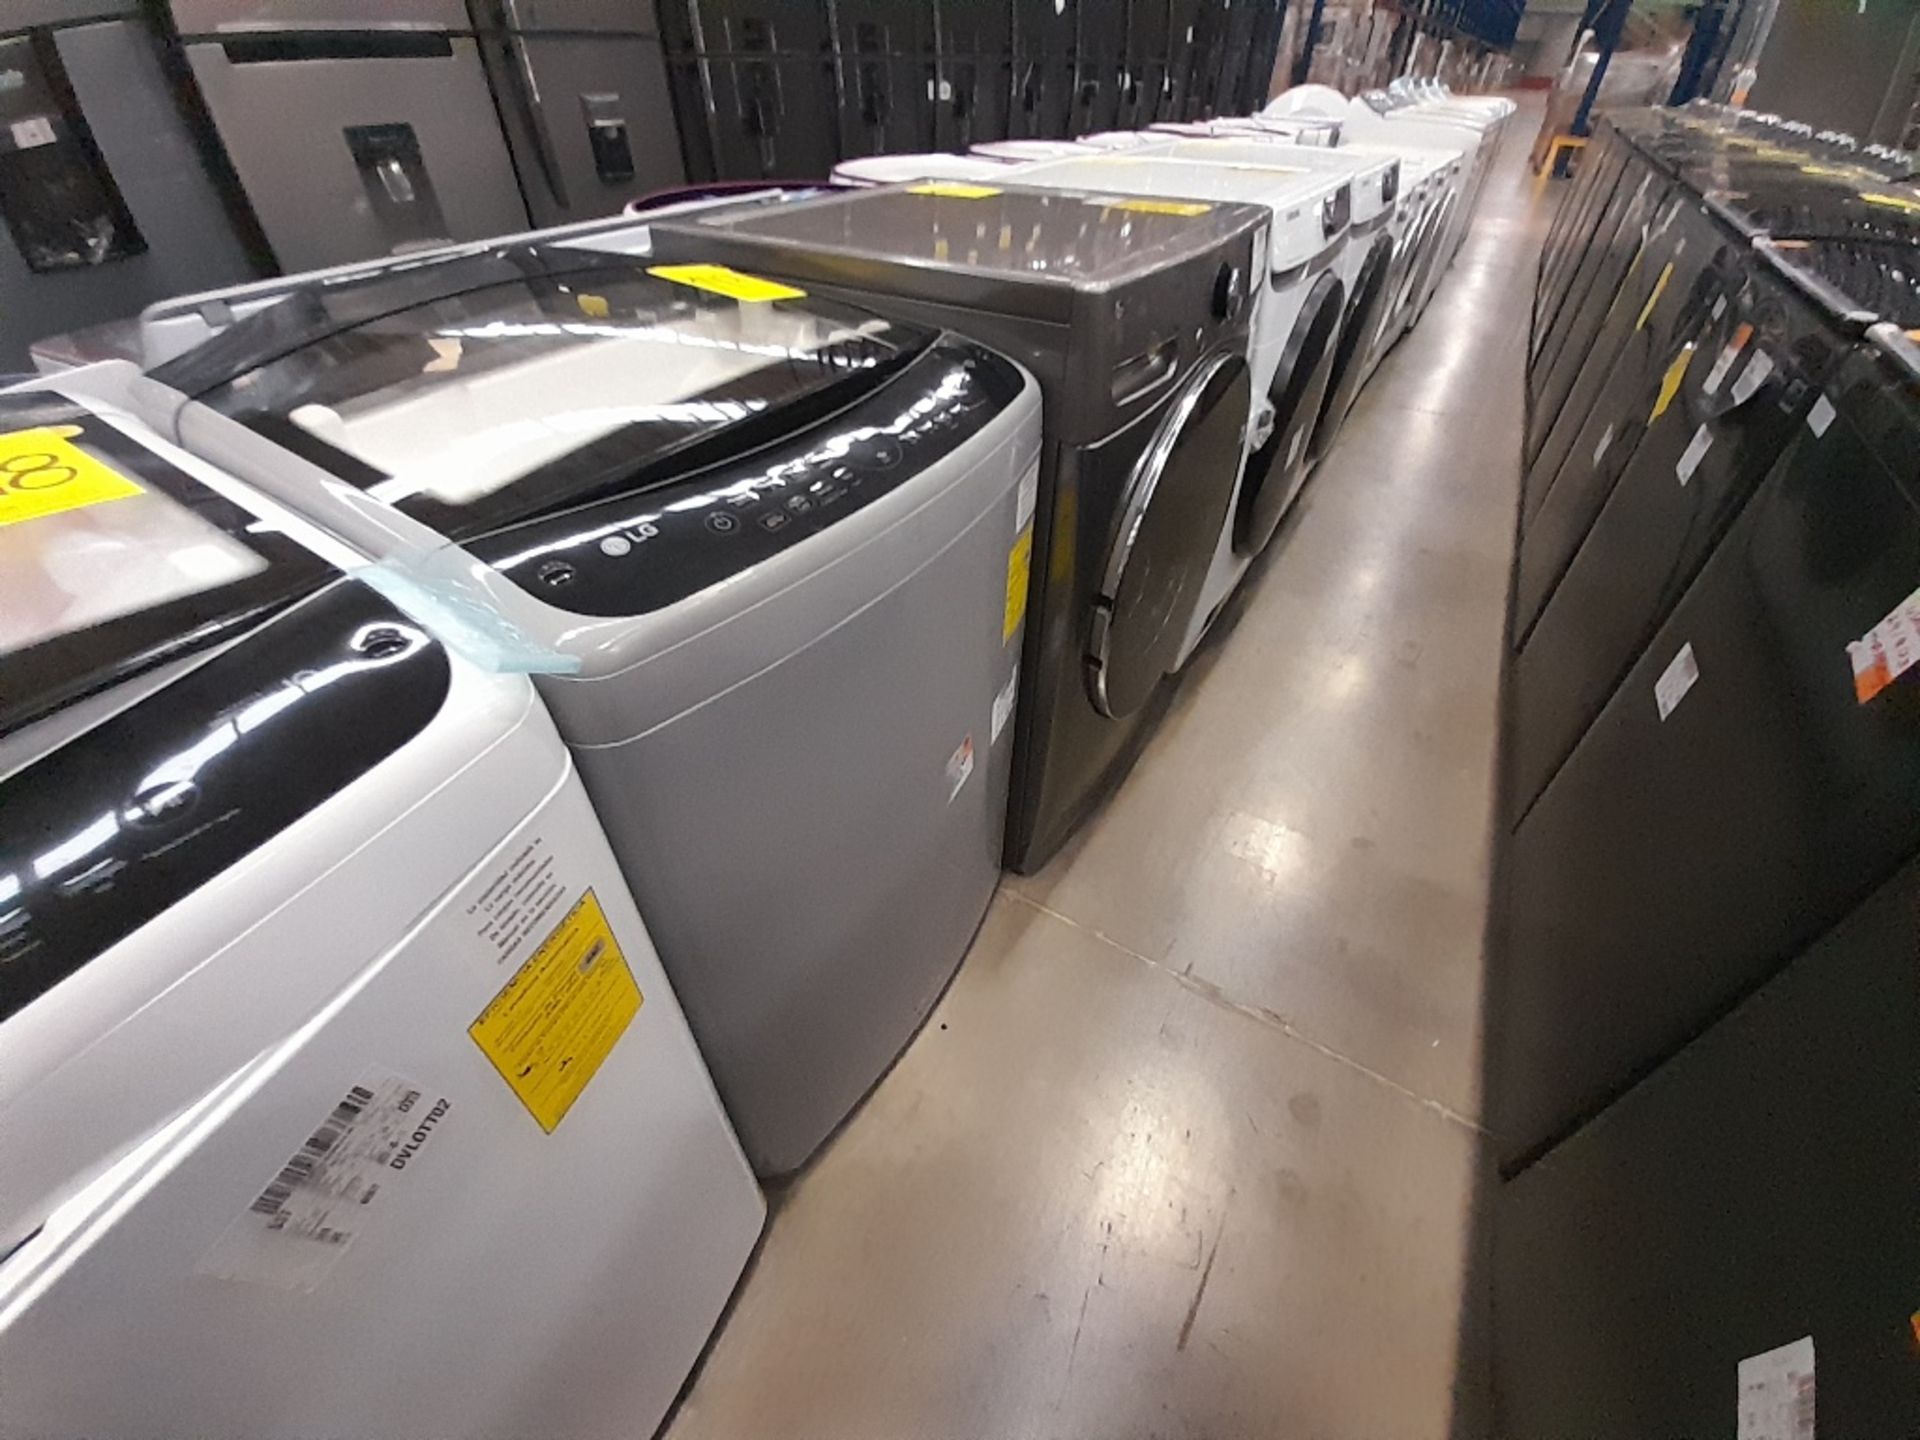 Lote de 1 lavadora y 1 Lavasecadora contiene: 1 lavadora de 18 KG, Marca LG, Modelo WT18DV6, Serie - Image 2 of 8